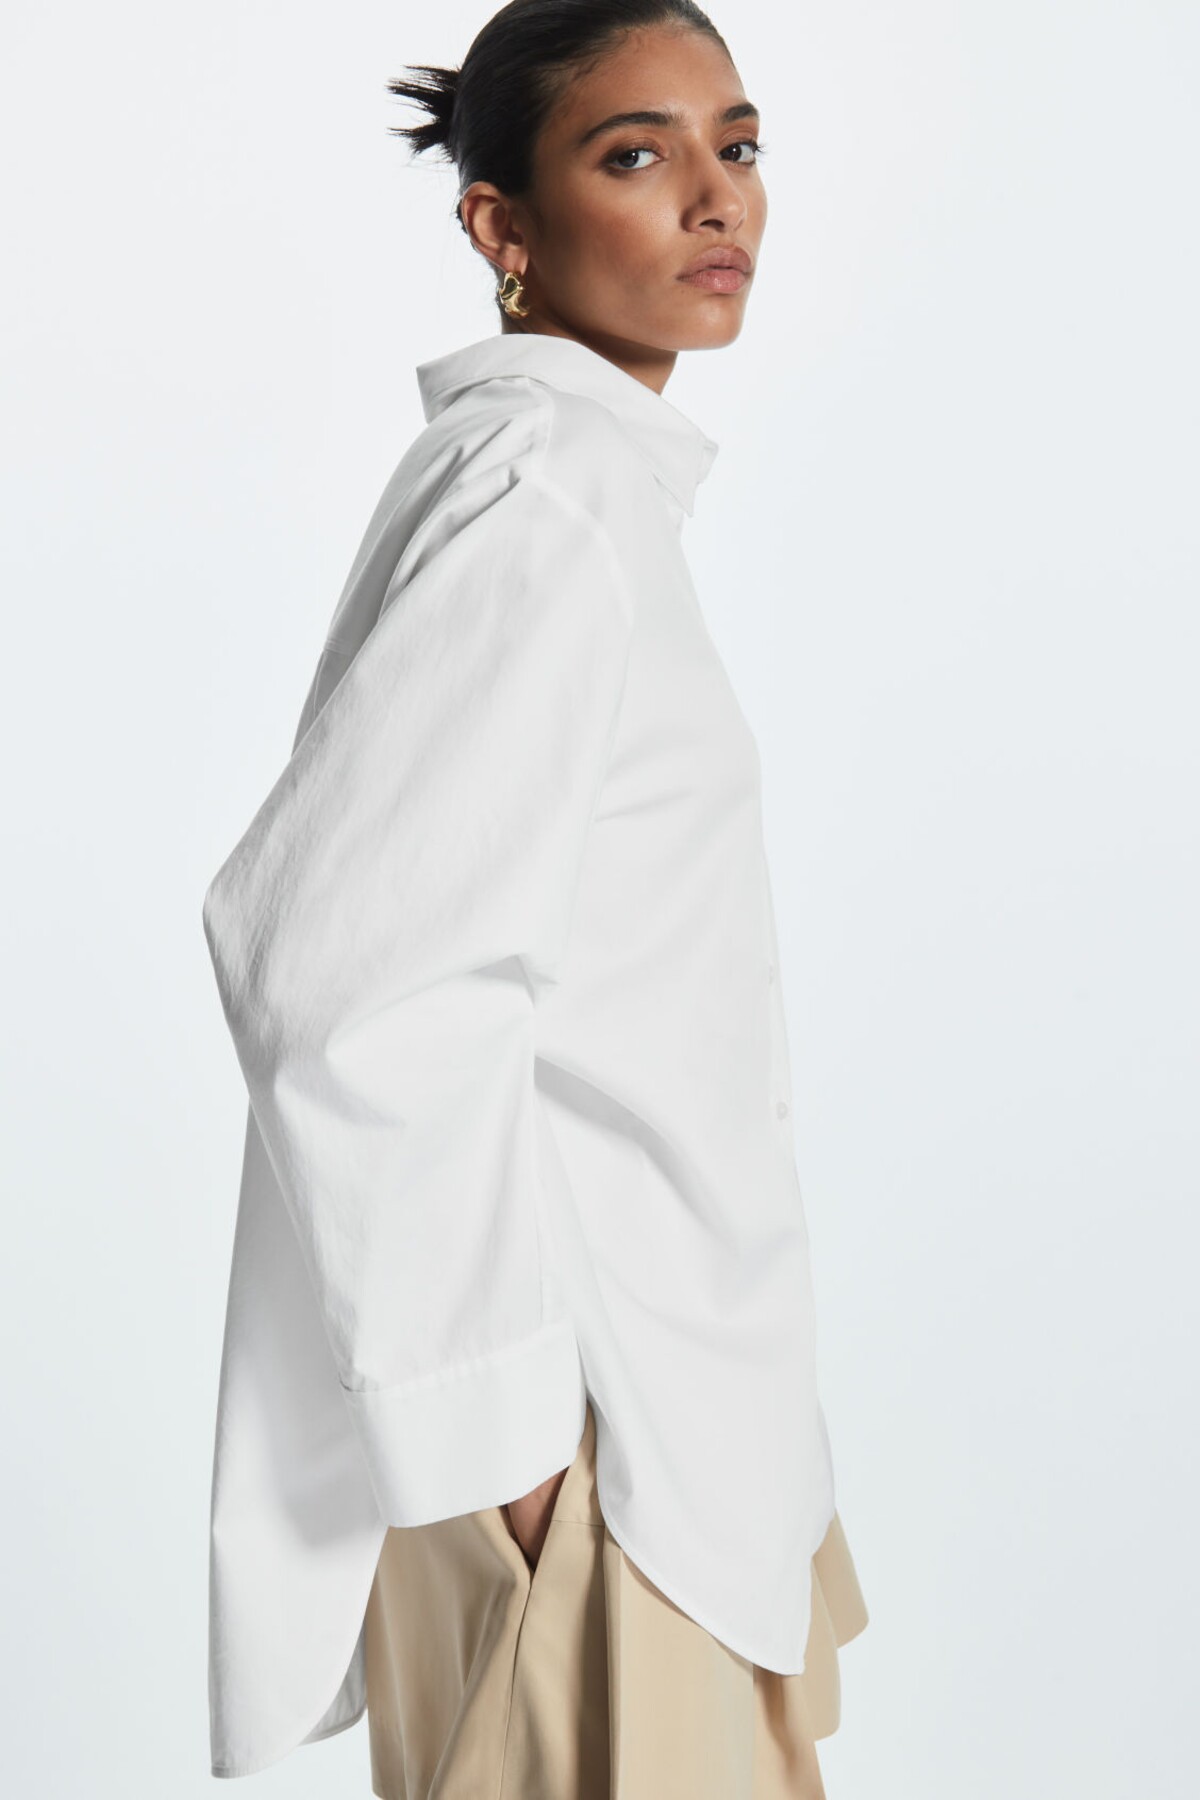 Nadrozmernú bielu košeľu ponúka množstvo výrobcov. Tento nadčasový model je od značky COS a stojí 89 eur.